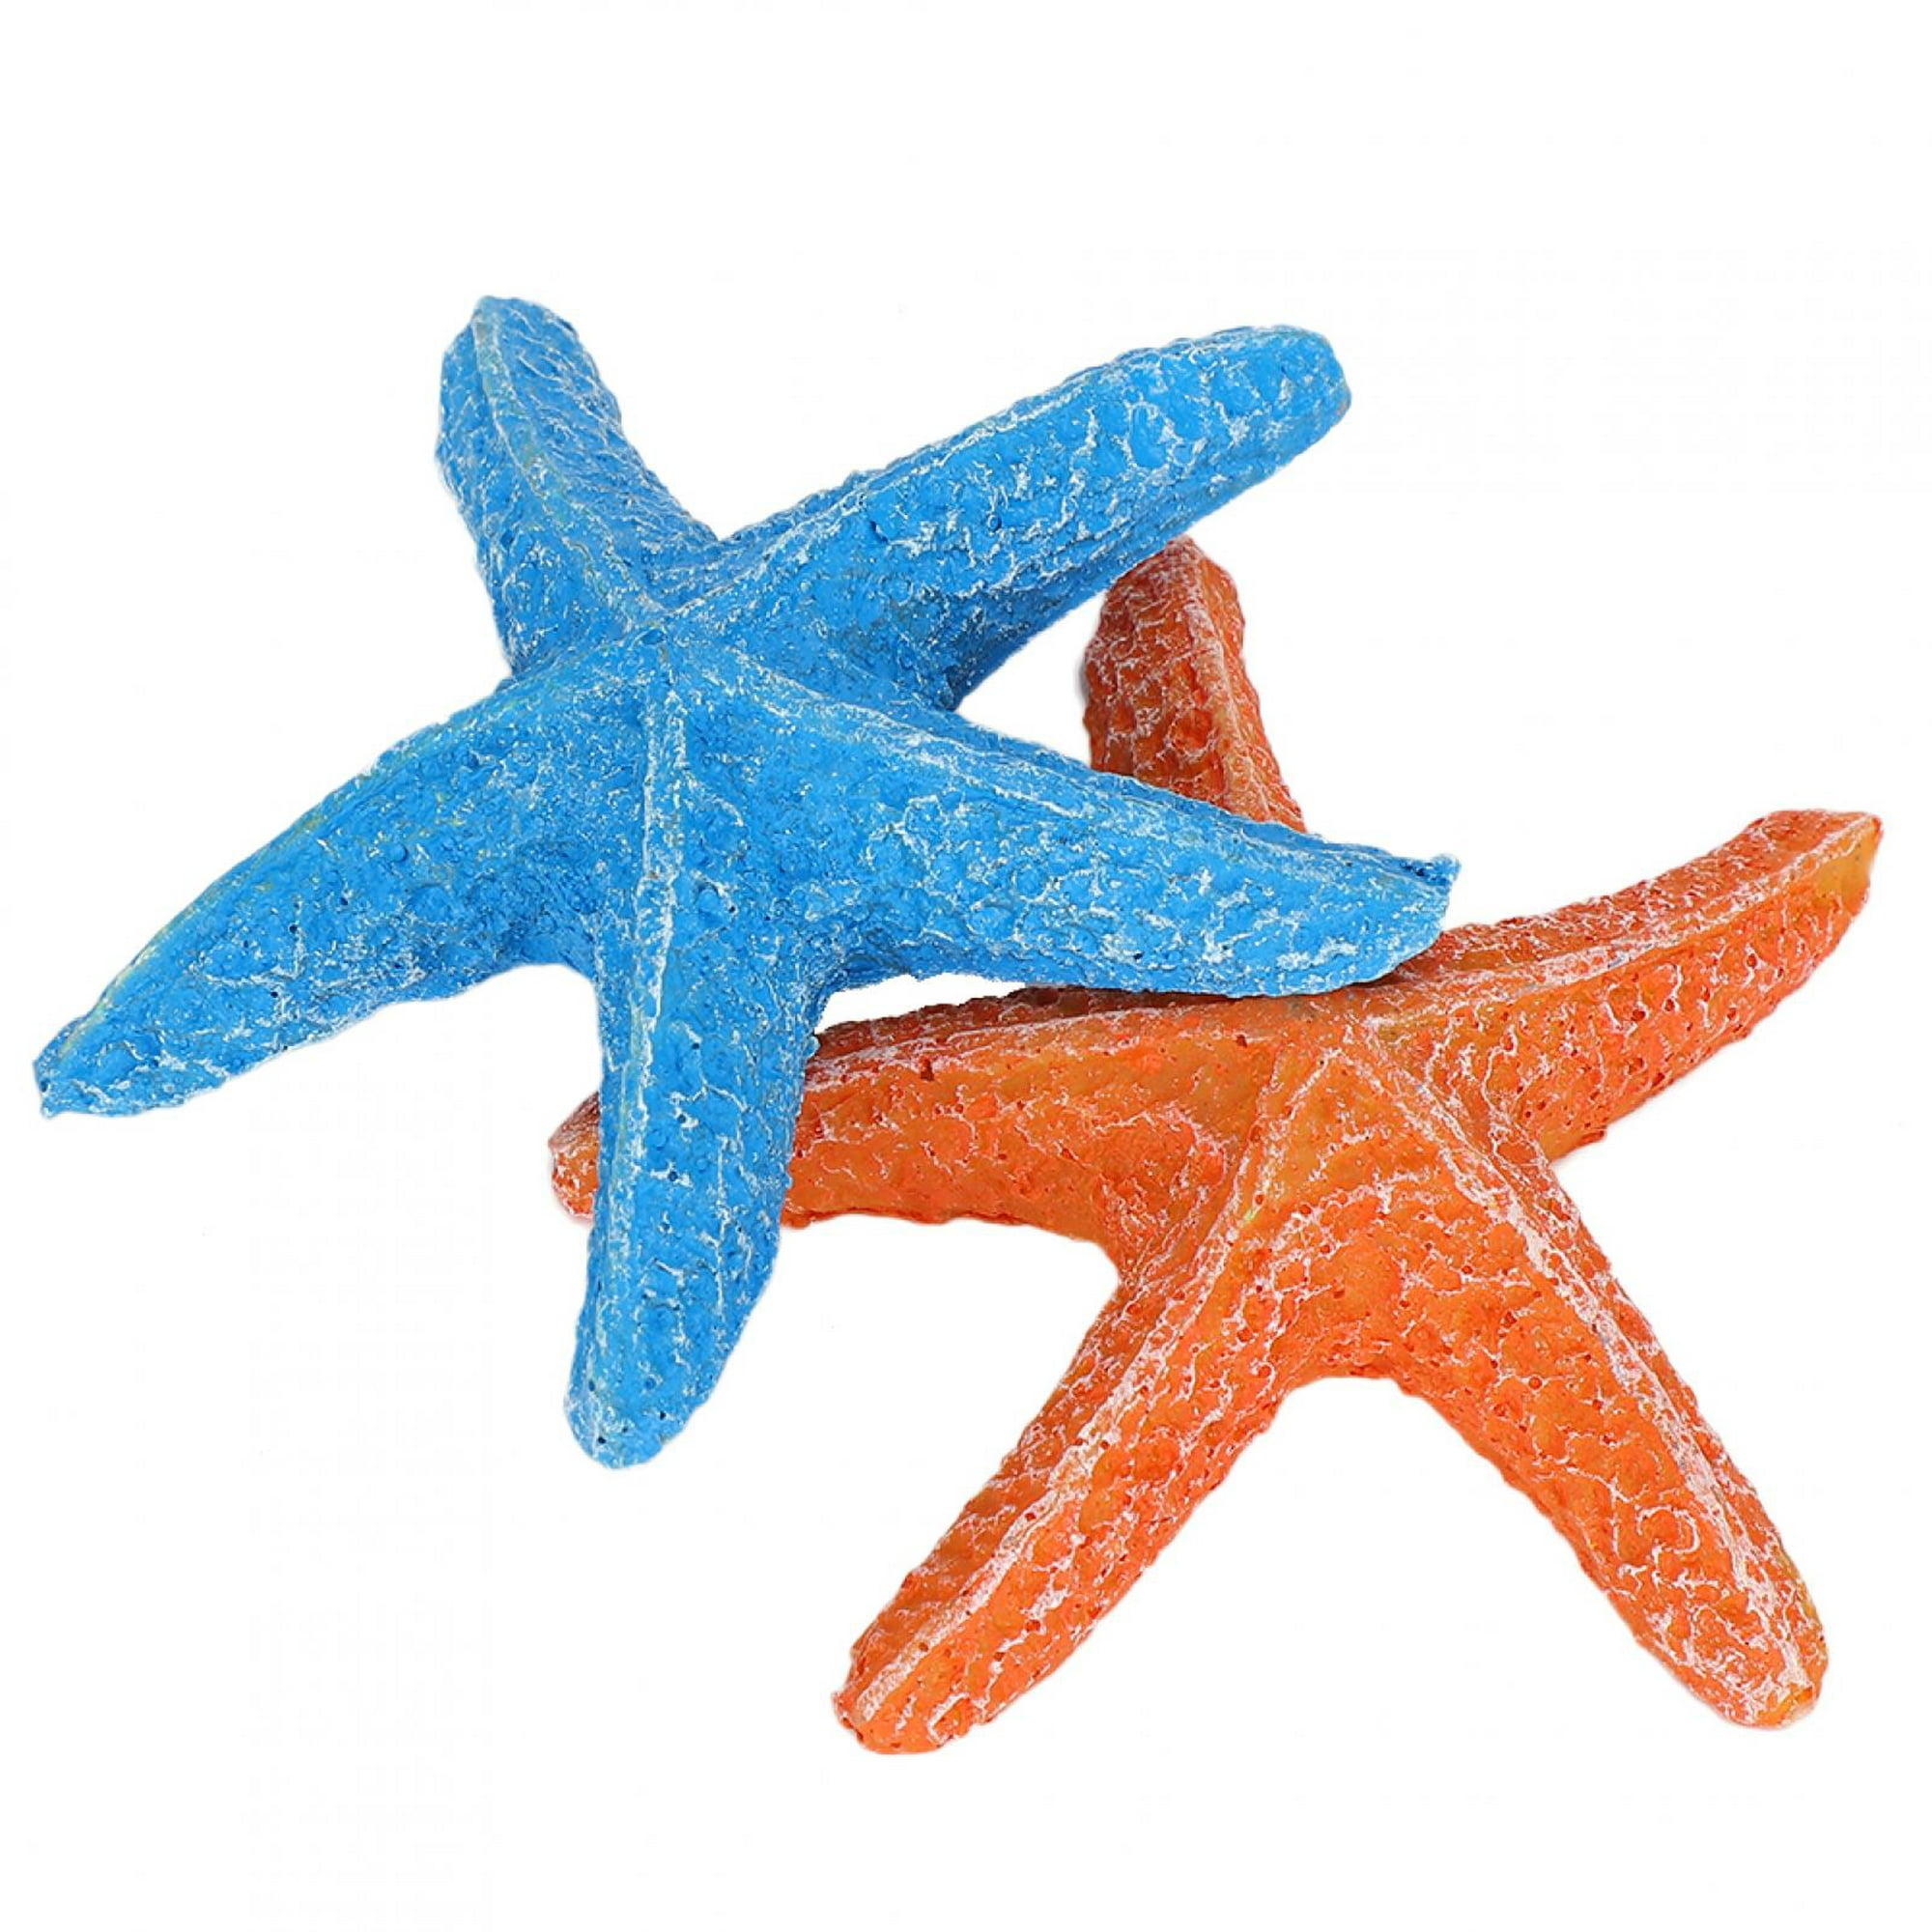 Decoración de estrella de mar, paquete de 10 peces de estrella surtidos  verdes, azules y blancos de 2 a 4 pulgadas, estrellas de mar para